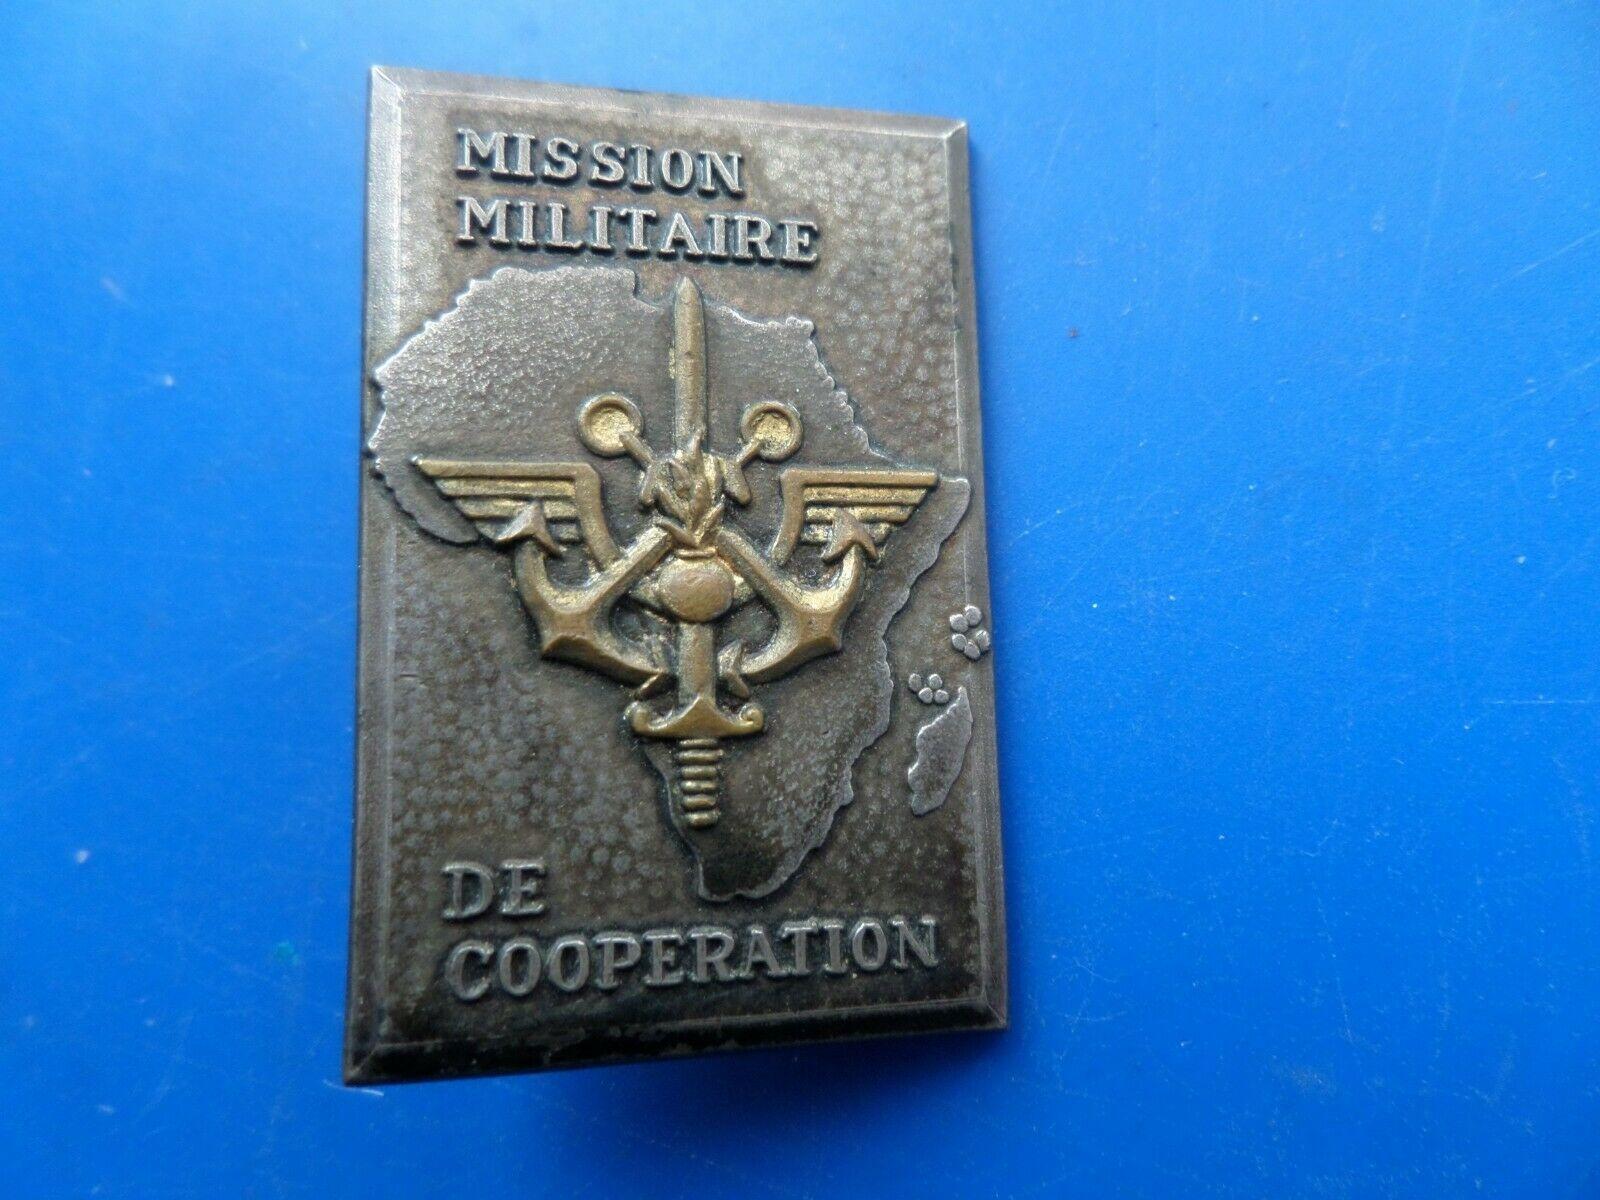 Mission militaire de cooperation 1